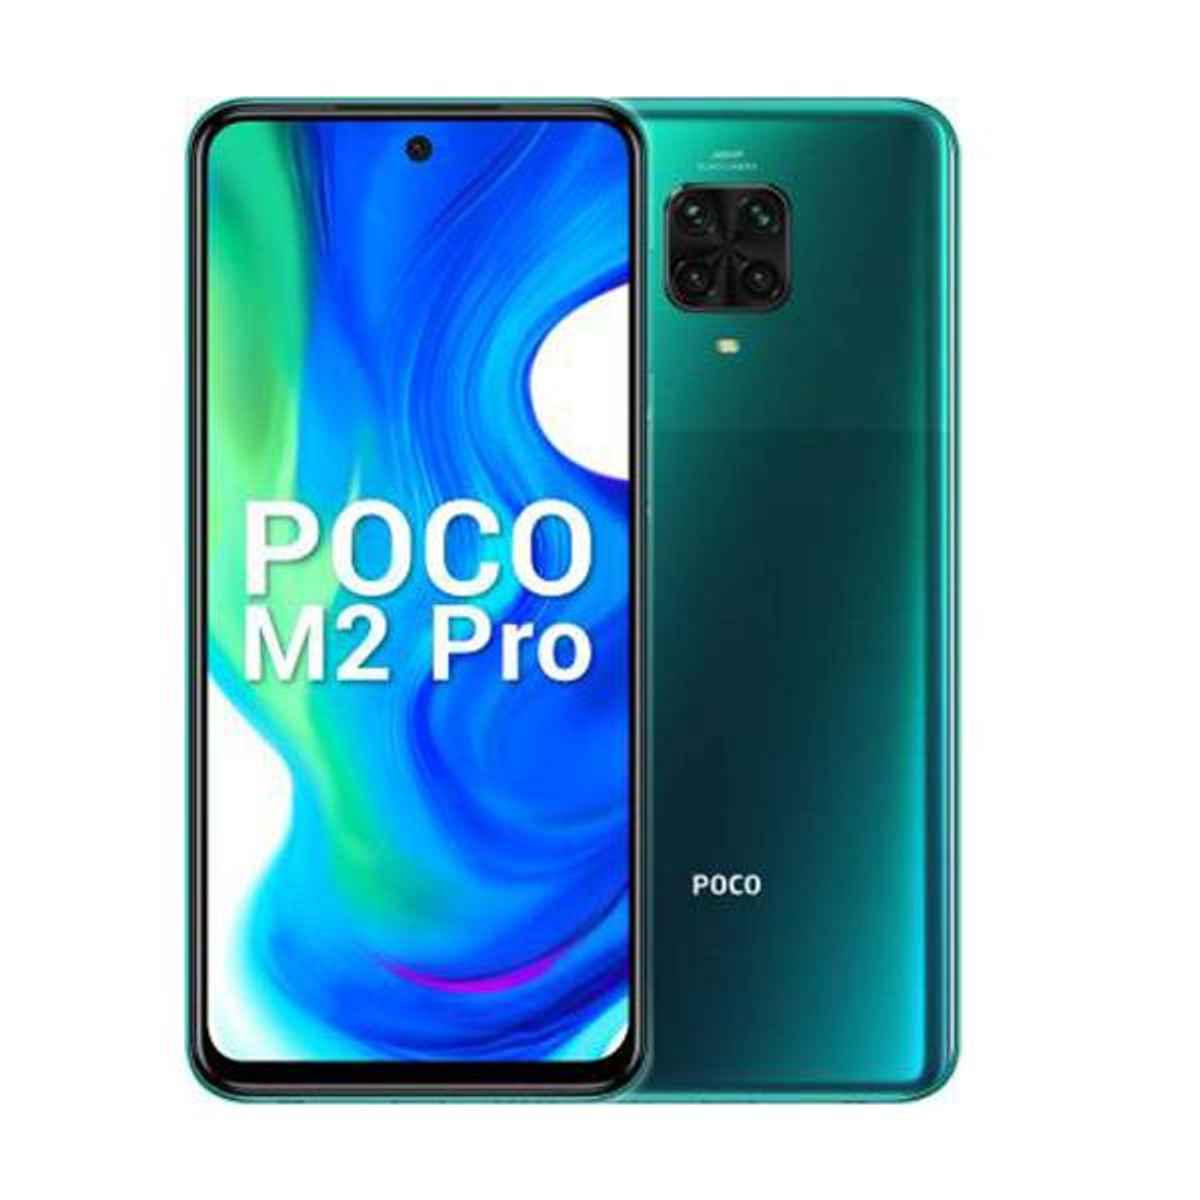 Poco M2 Pro Price in India, Full Specs - 13th June 2021 | Digit